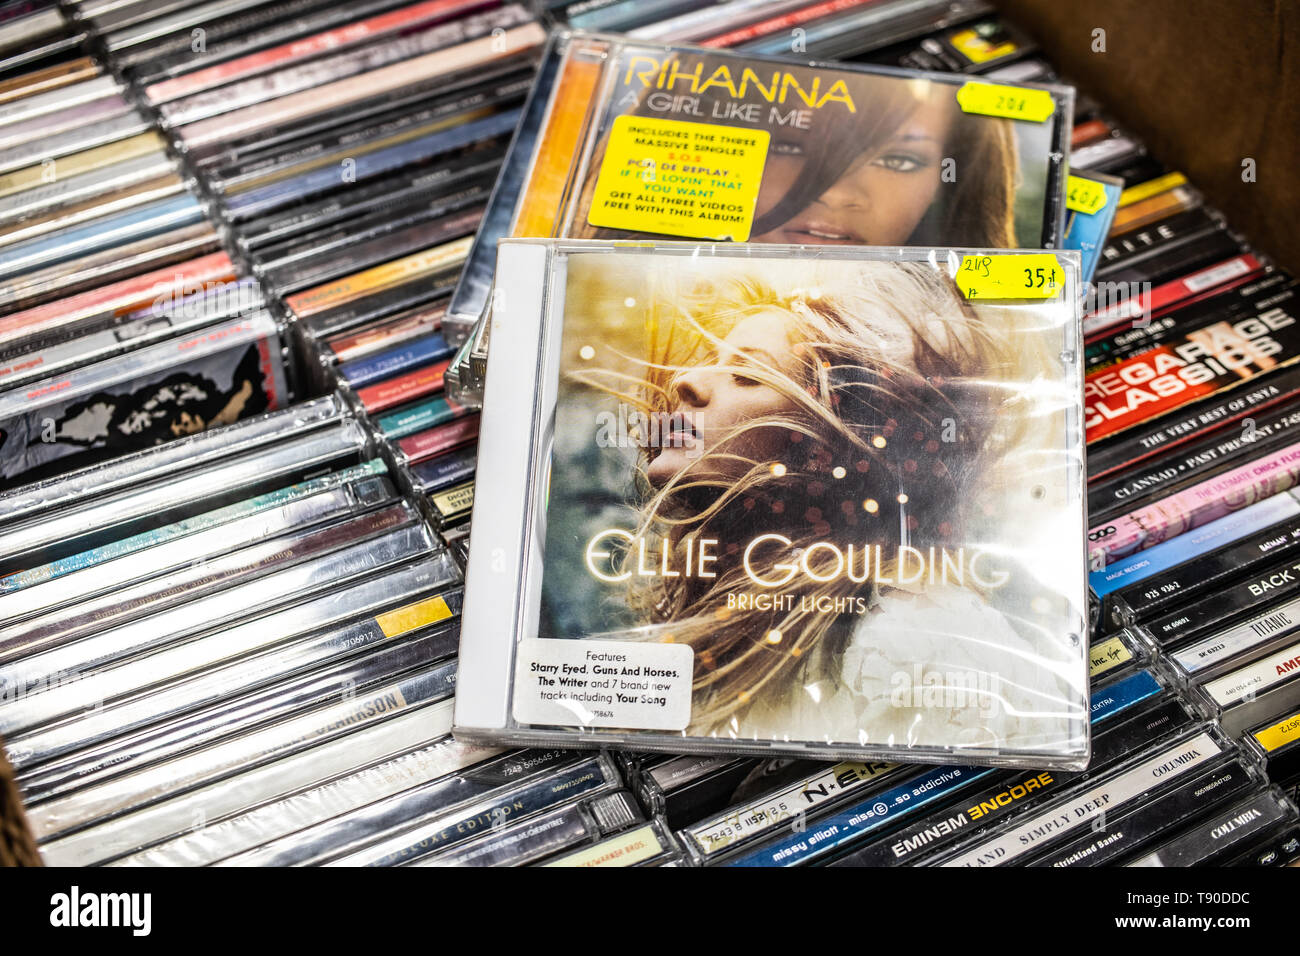 Nadarzyn, Polonia, 11 Maggio 2019: Ellie Goulding CD album luci brillanti 2010 sul display per la vendita, la famosa cantante inglese e cantautore, collezione di CD Foto Stock